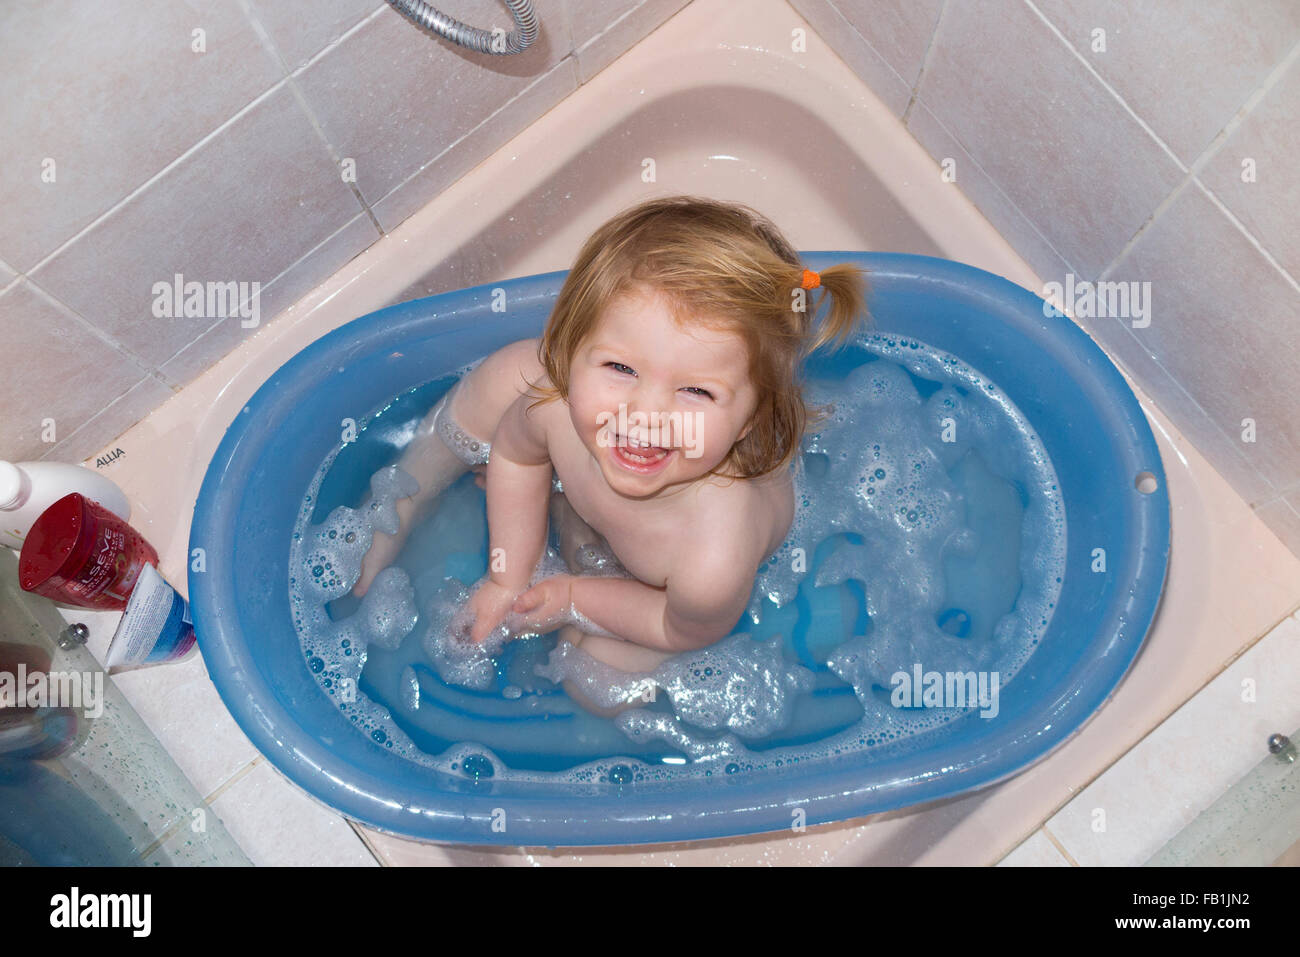 buscar Asco Pelmel Uno / 1 año de edad - casi un niño - disfruta de un baño en una bañera  portátil colocado en un hotel / casa de huéspedes del plato de ducha  Fotografía de stock - Alamy